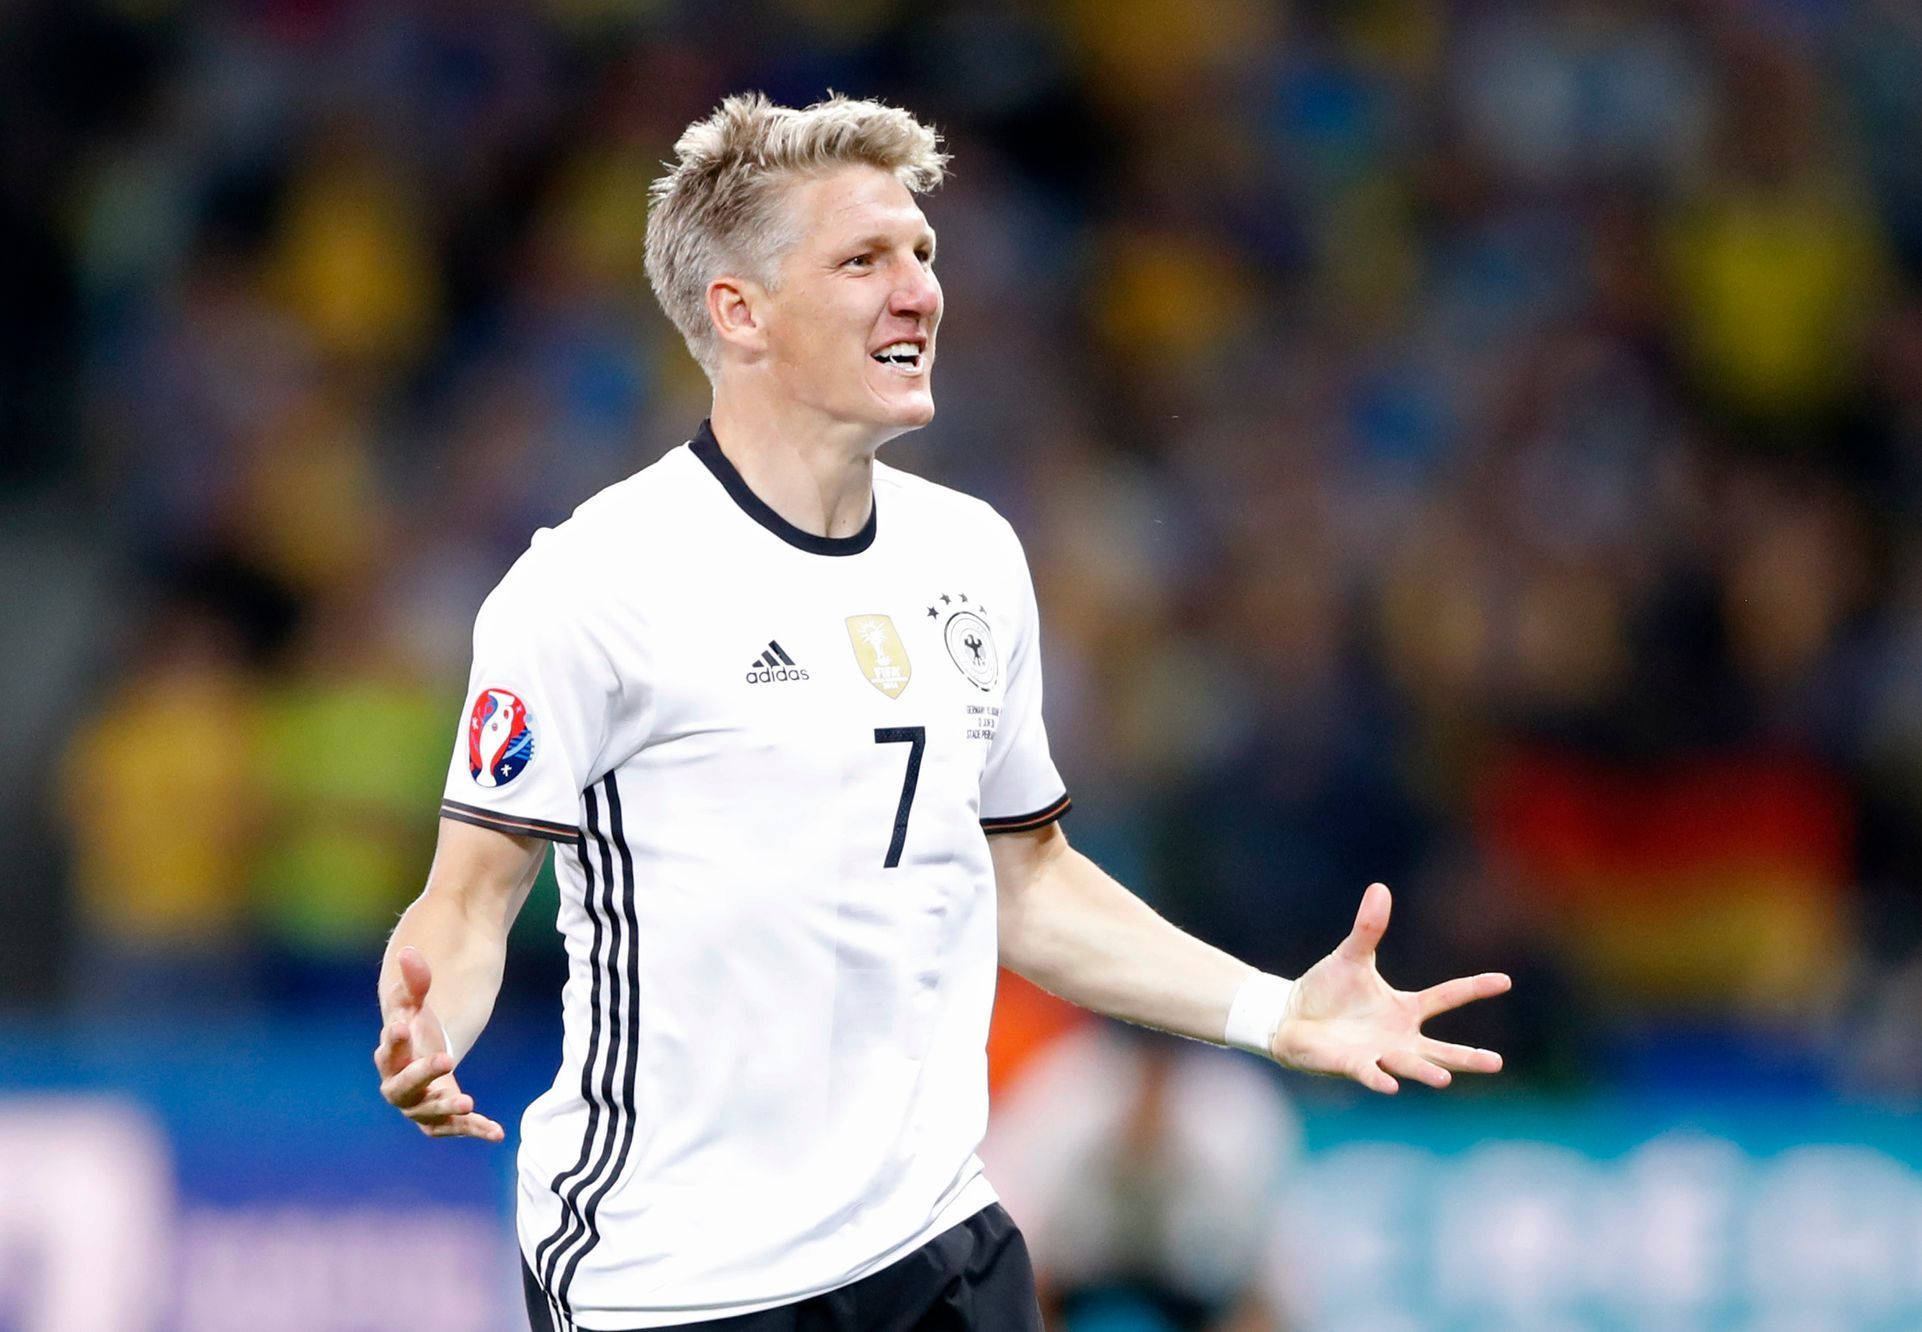 Euro 2016, Německo-Ukrajina: Bastian Schweinsteiger slaví gól na 2:0